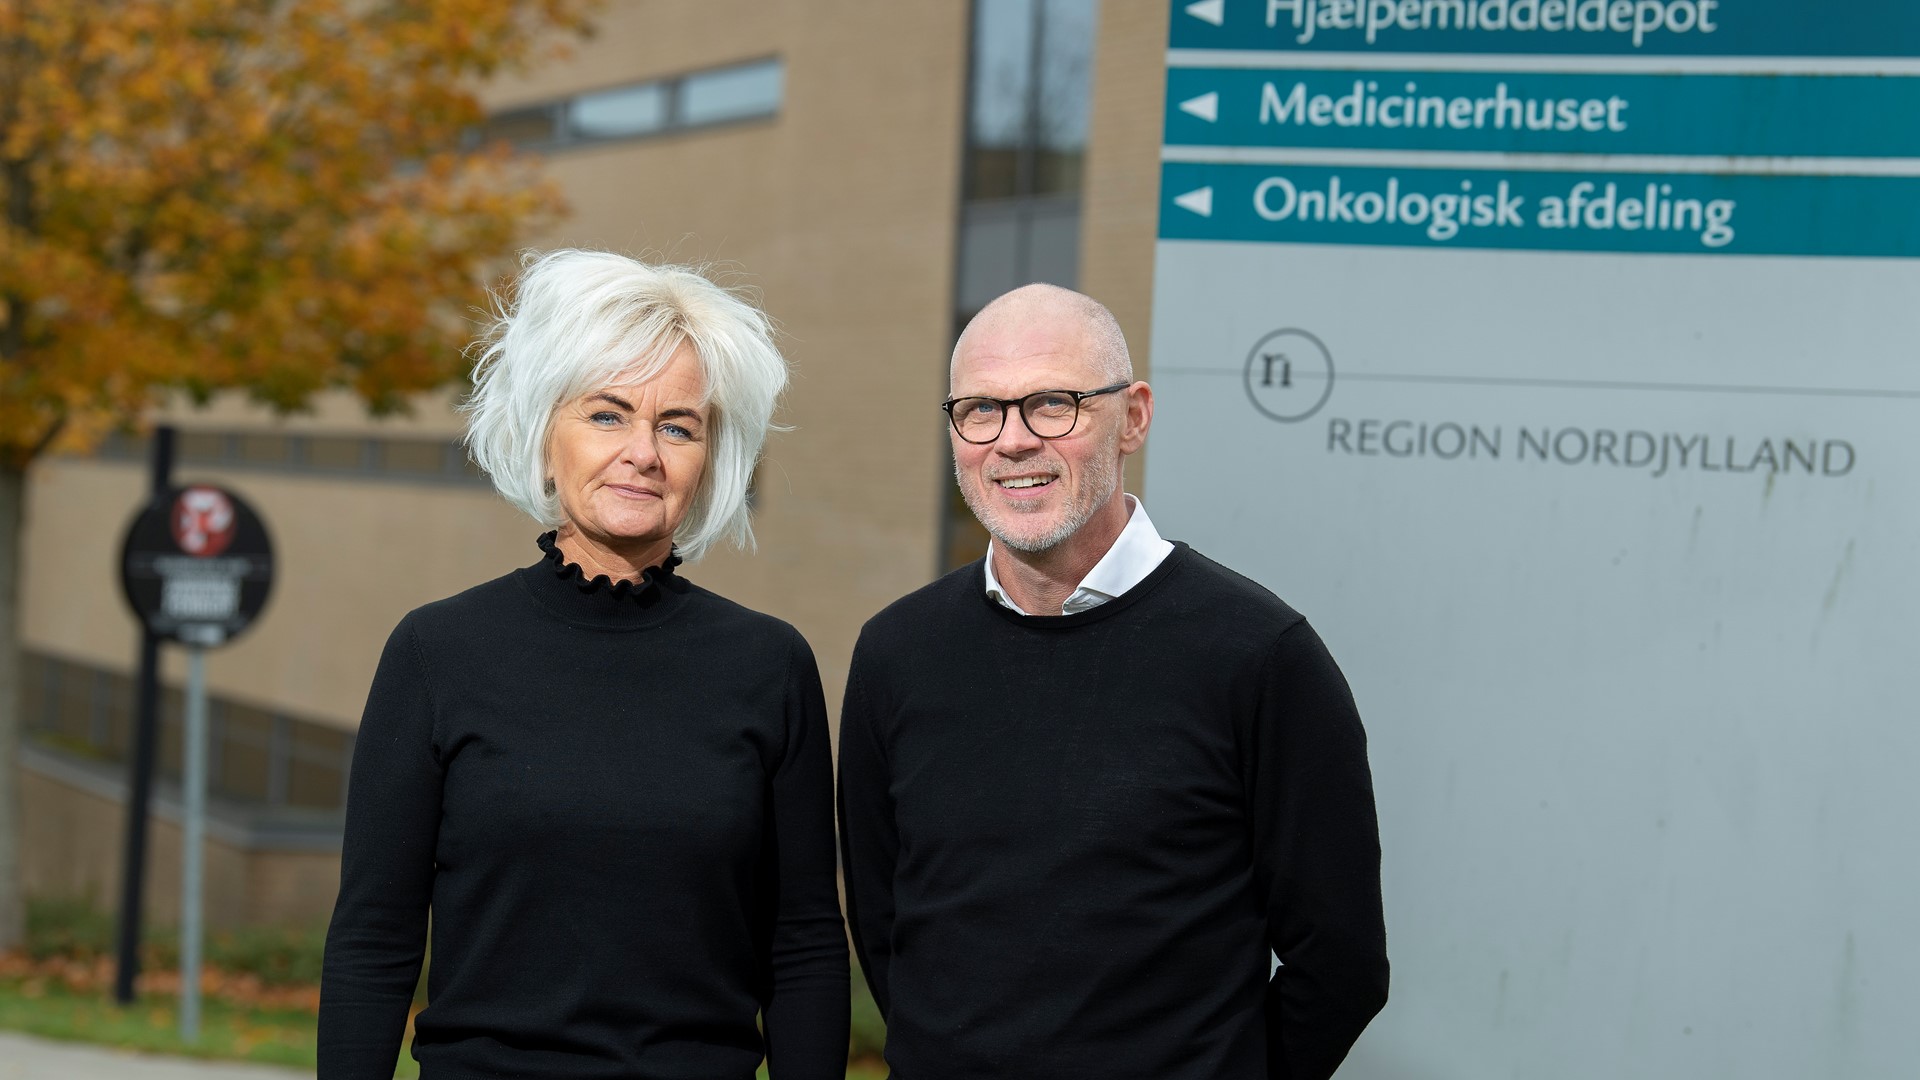 Inge Bolet og Bo Larsen er arbejdsmiljøkonsulenter. De arbejder med sygefravær i Region Nordjylland. Foto: Claus Søndberg.